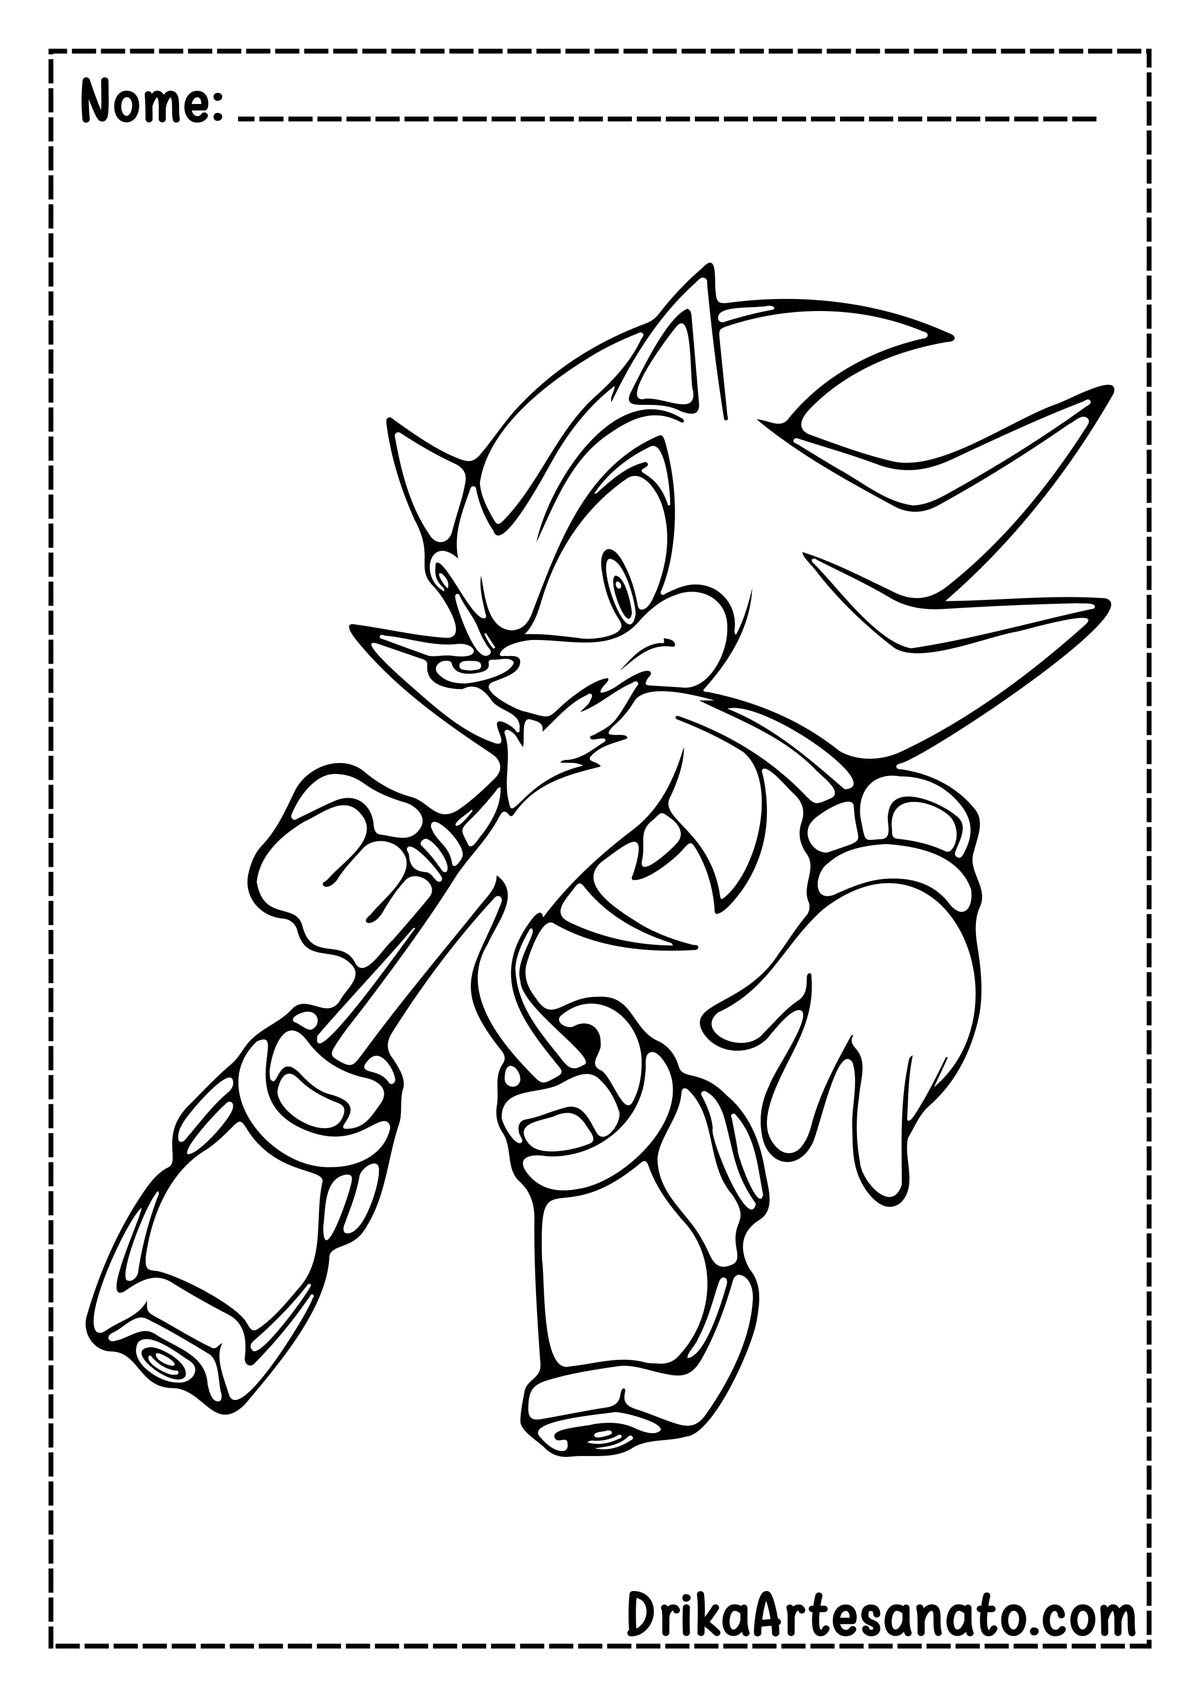 Desenho do Sonic para Imprimir e Colorir